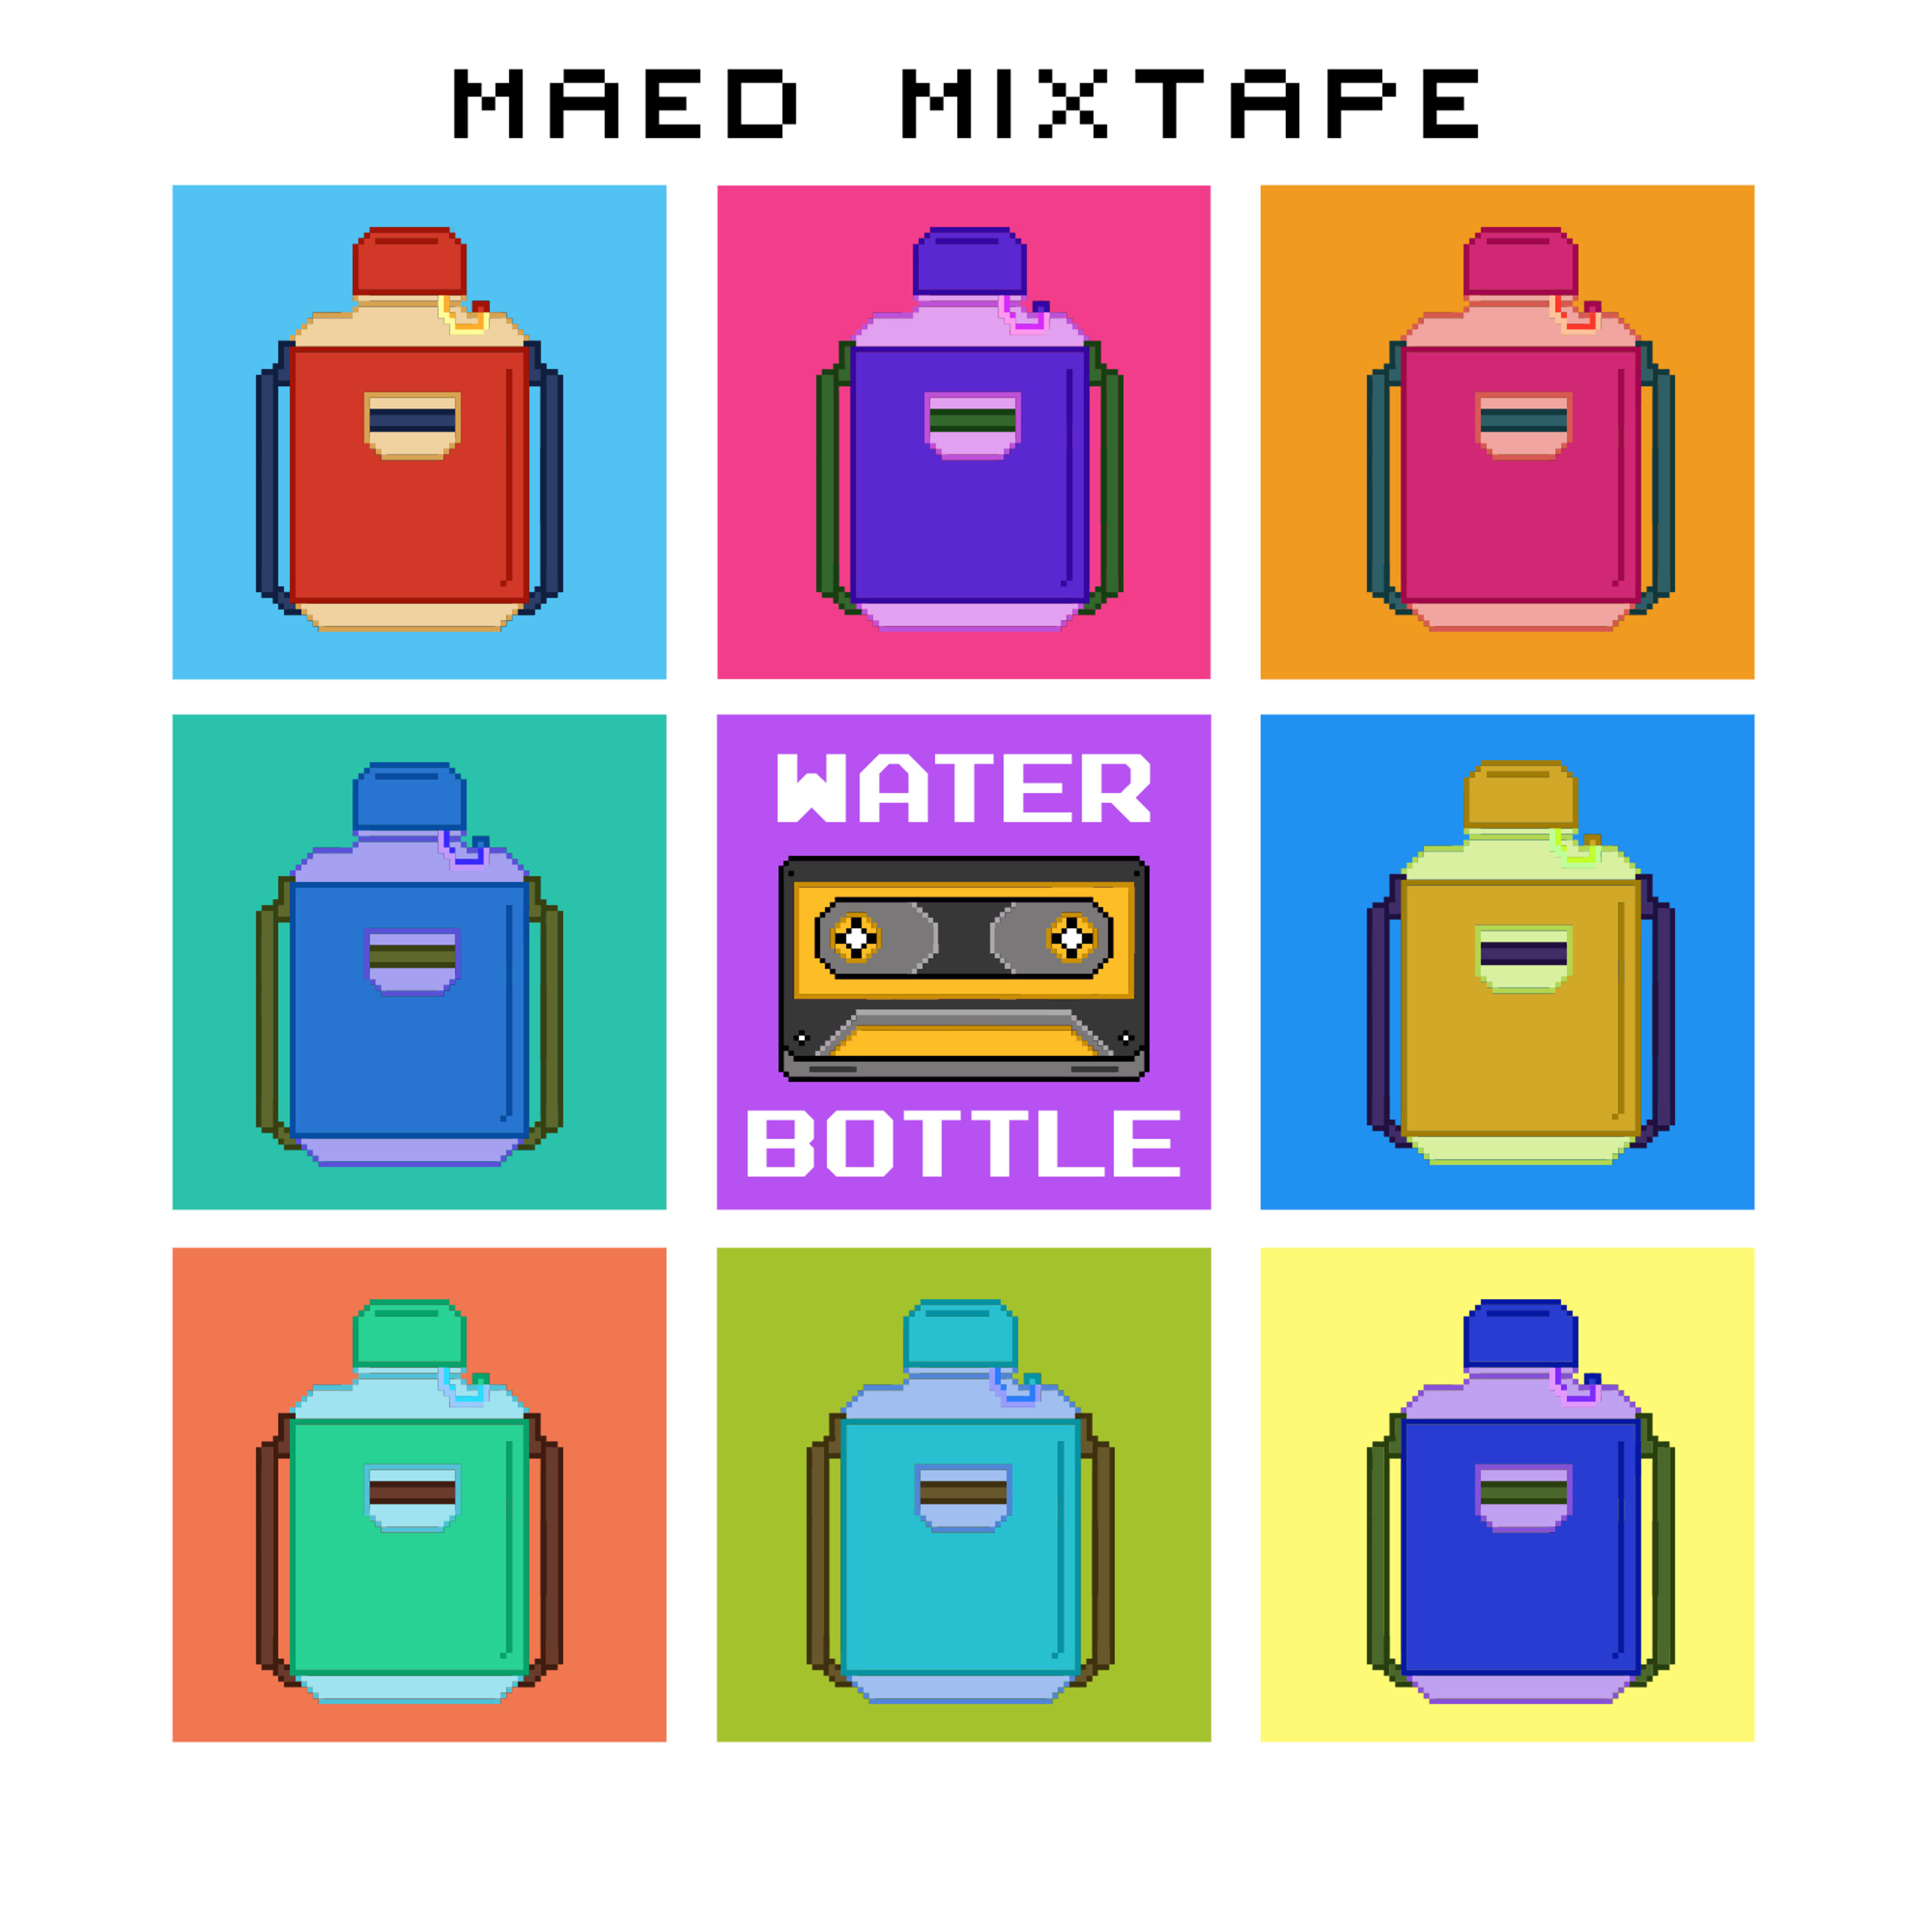 Maed Mixtape - Water Bottle